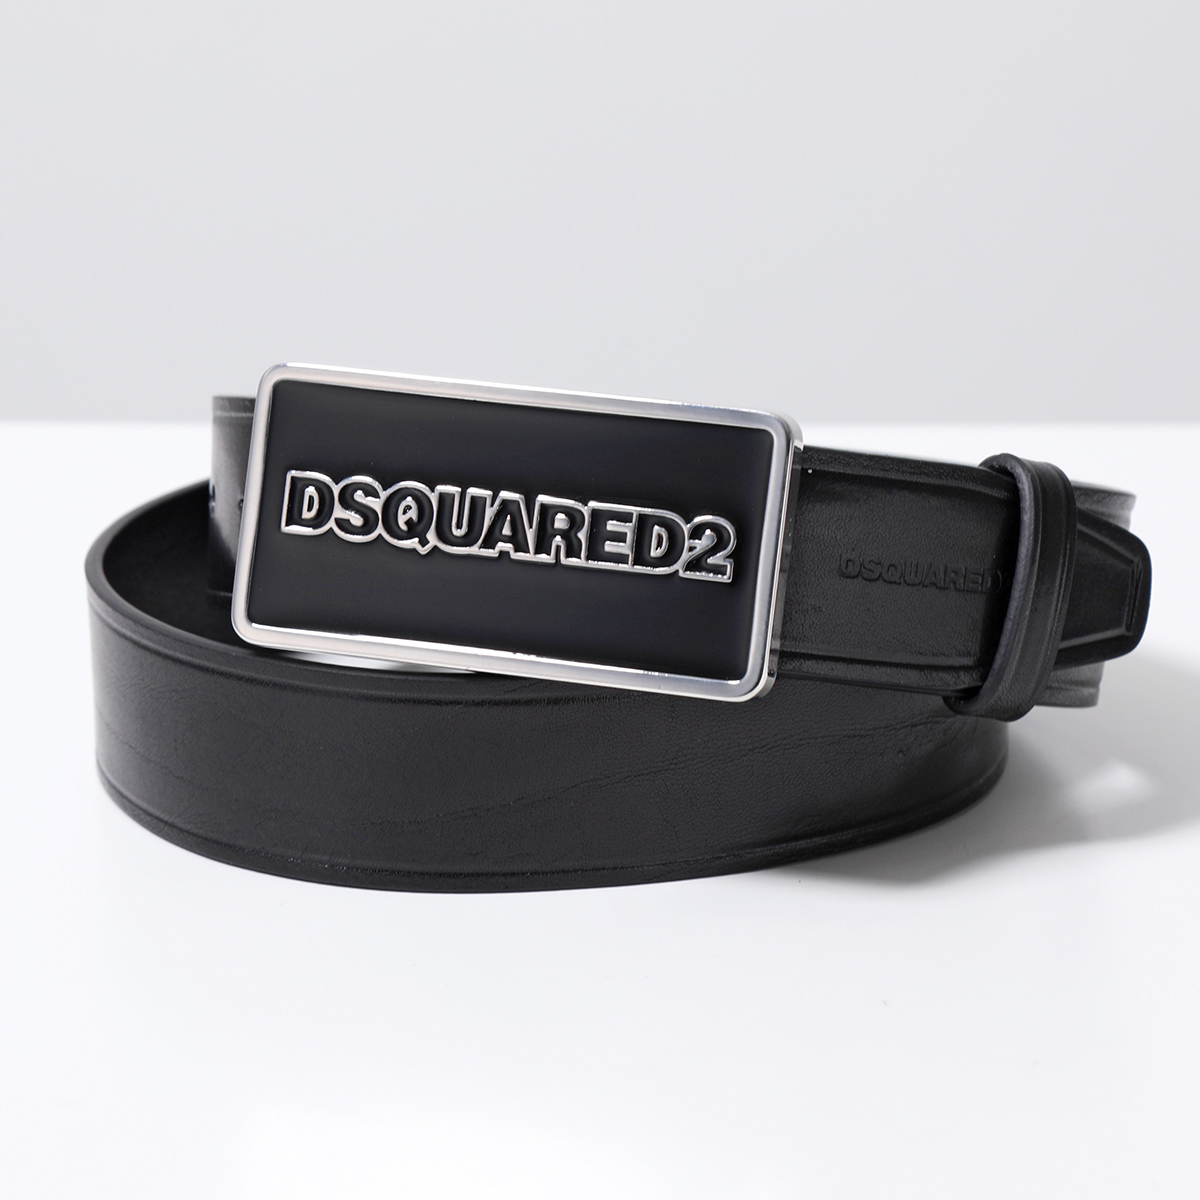 DSQUARED2 ディースクエアード ベルト DSQUARED2 LOGO BELT BEM0434 12904309 メンズ レザー メタル ロゴ  M1484//BLACK+BLACK+BLACK | インポートセレクト musee